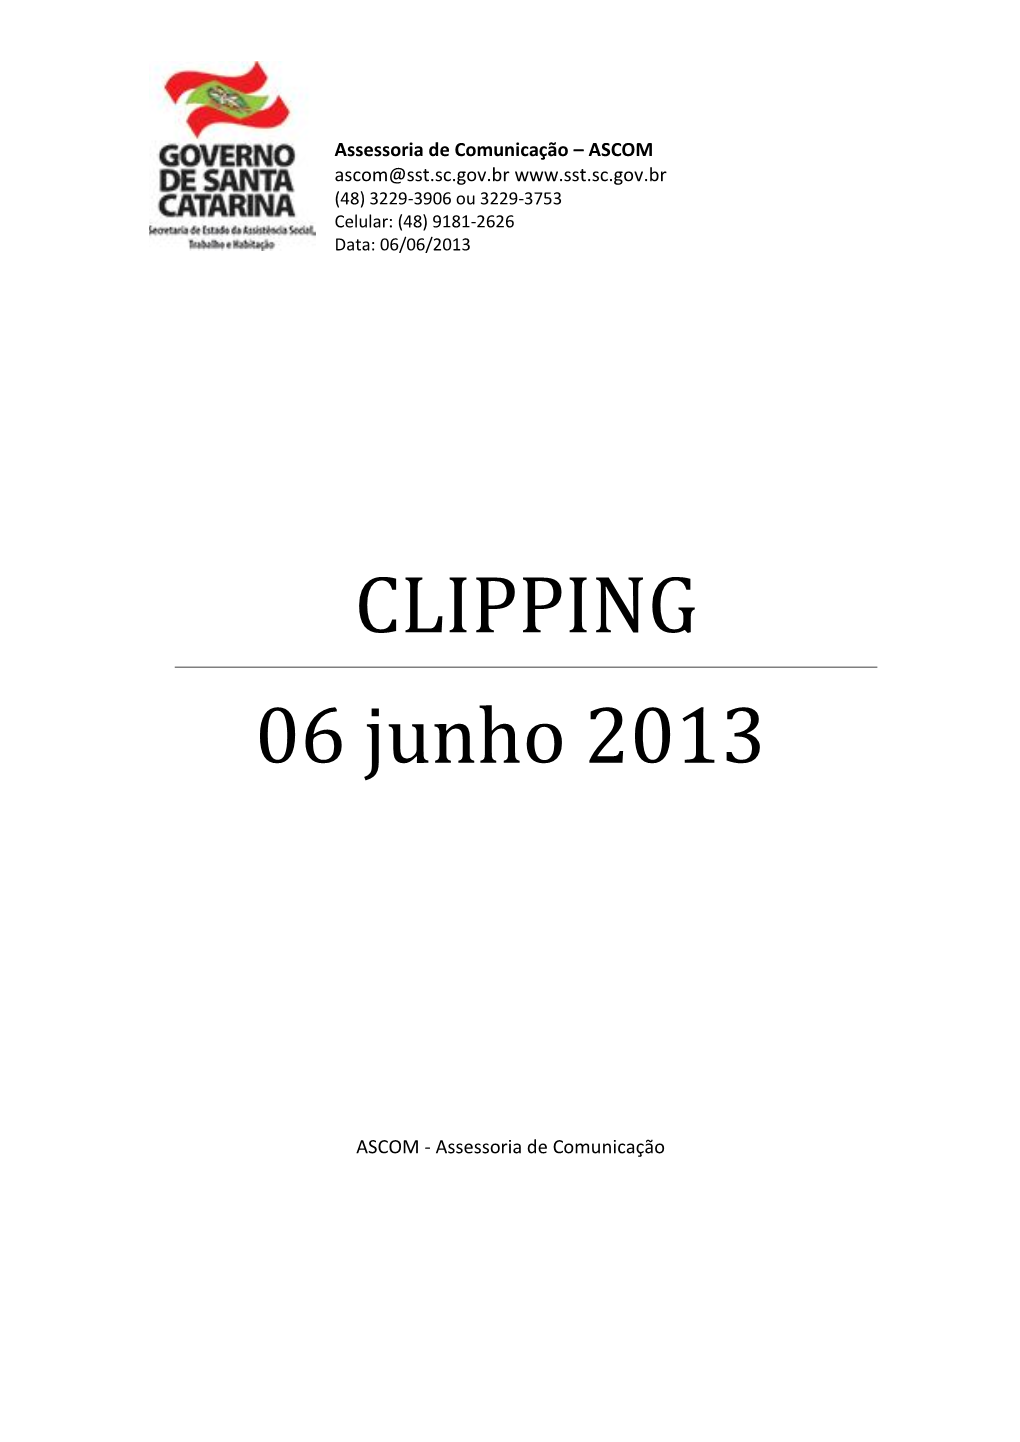 CLIPPING 06 Junho 2013